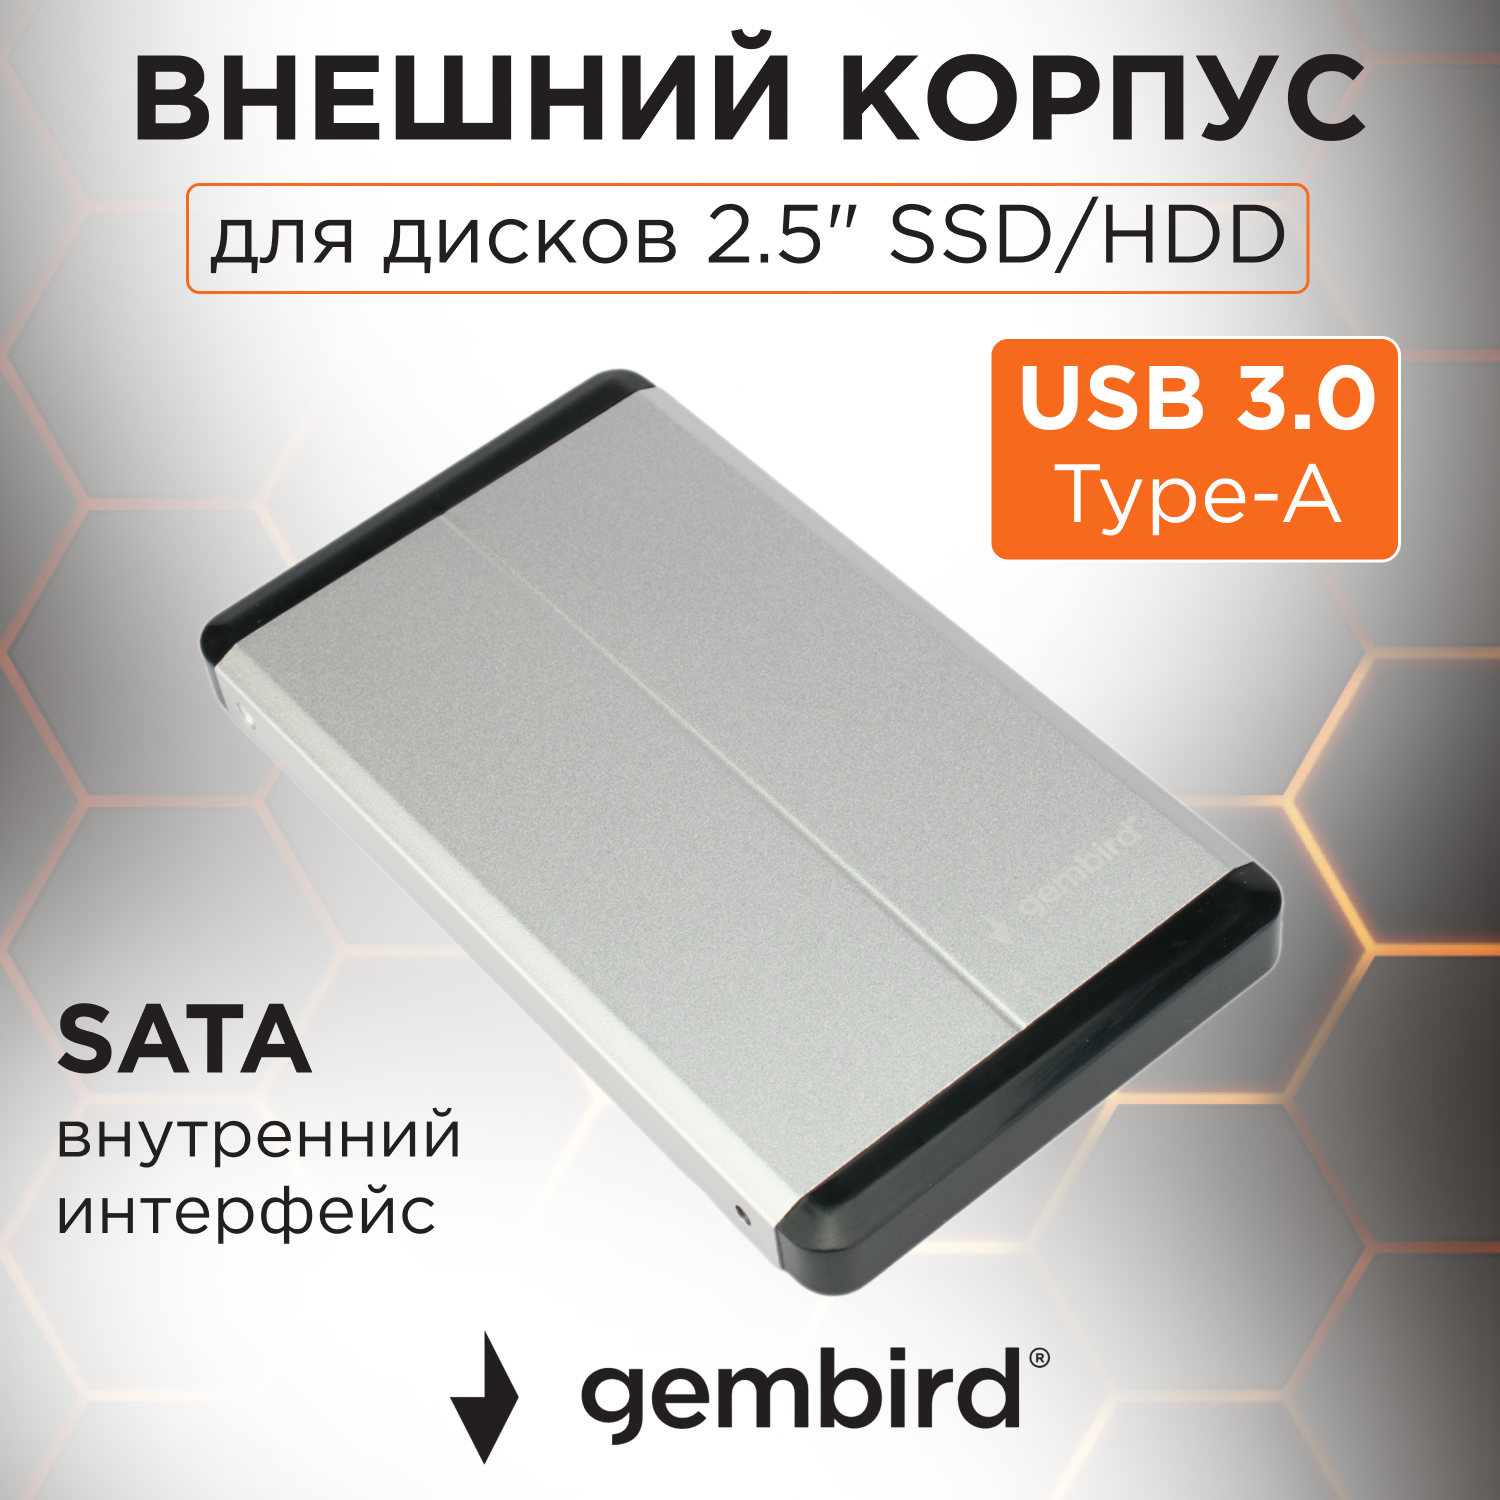 Корпус для HDD/SSD Gembird EE2-U3S-2